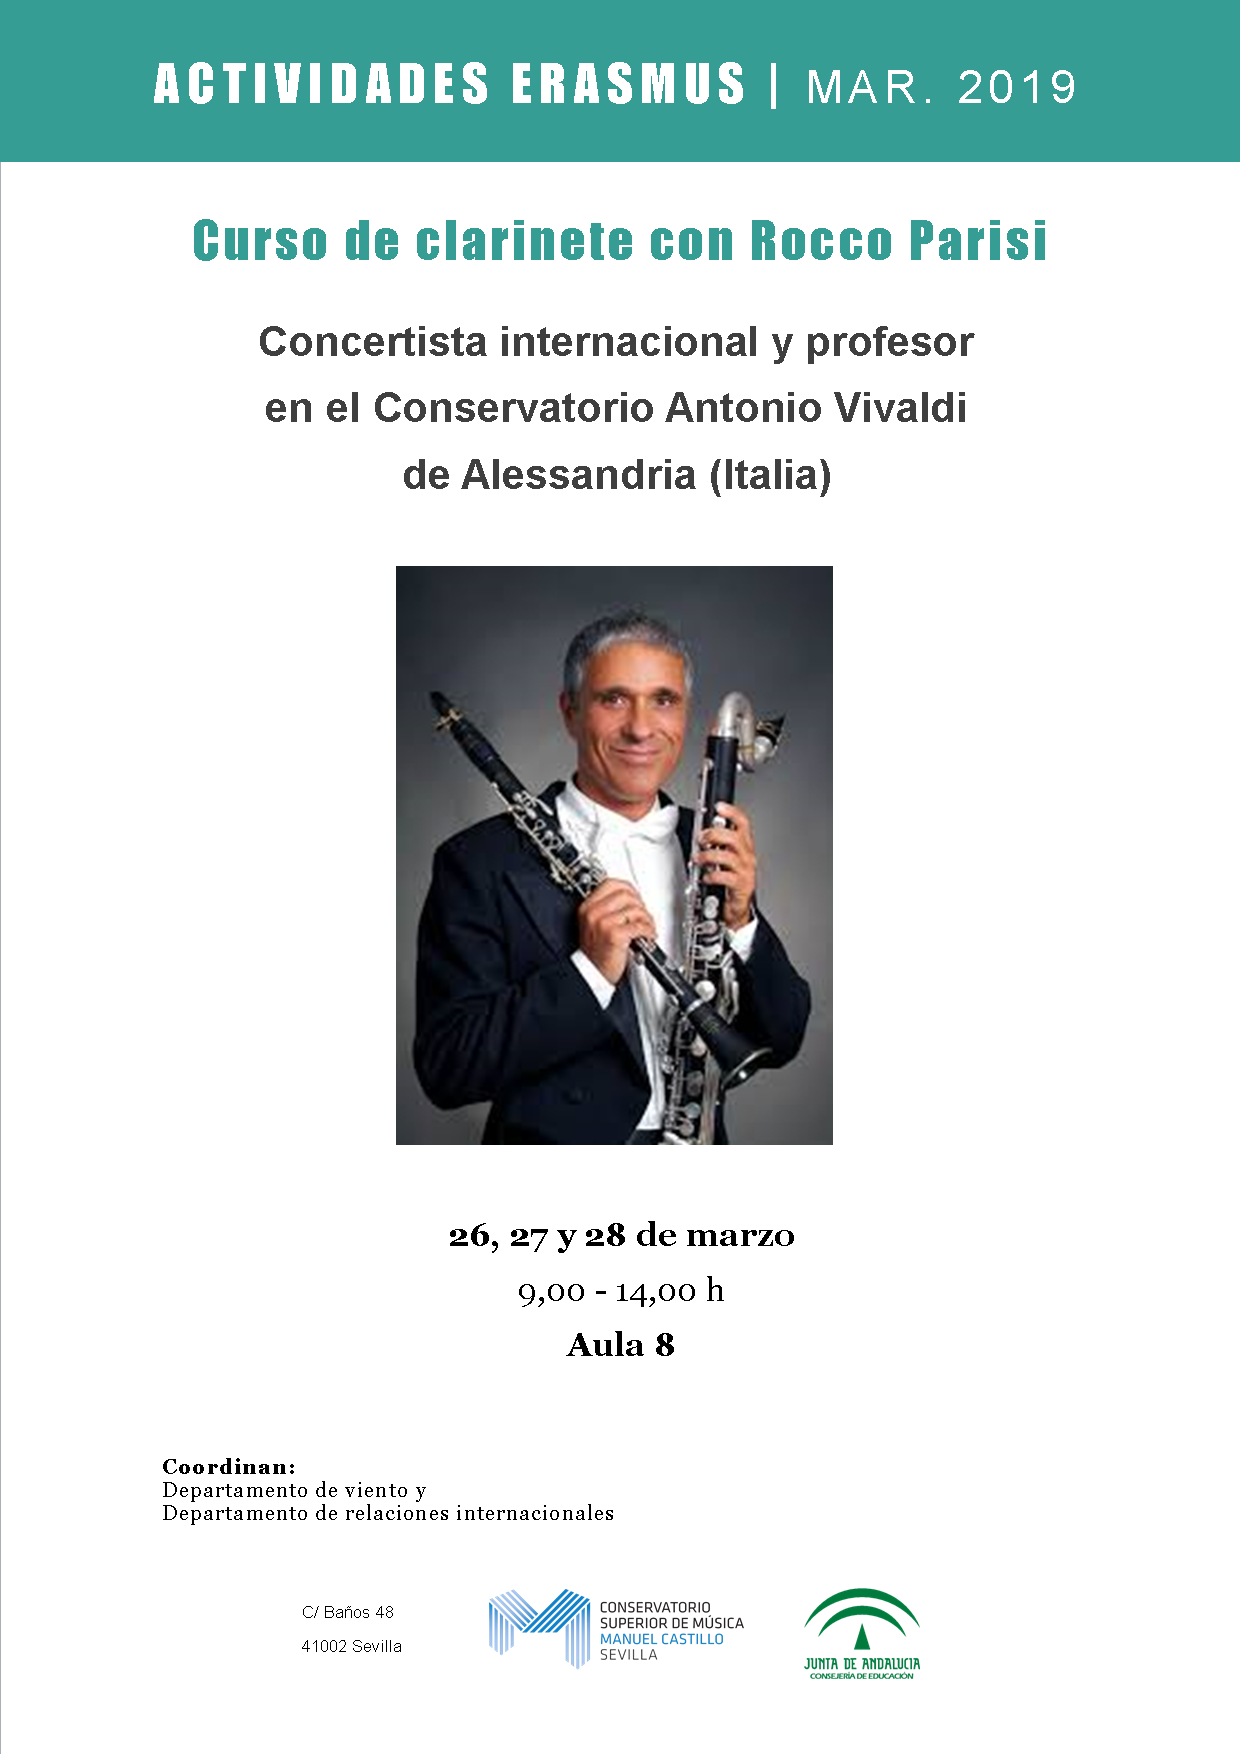 Curso de clarinete y concierto — Rocco Parisi